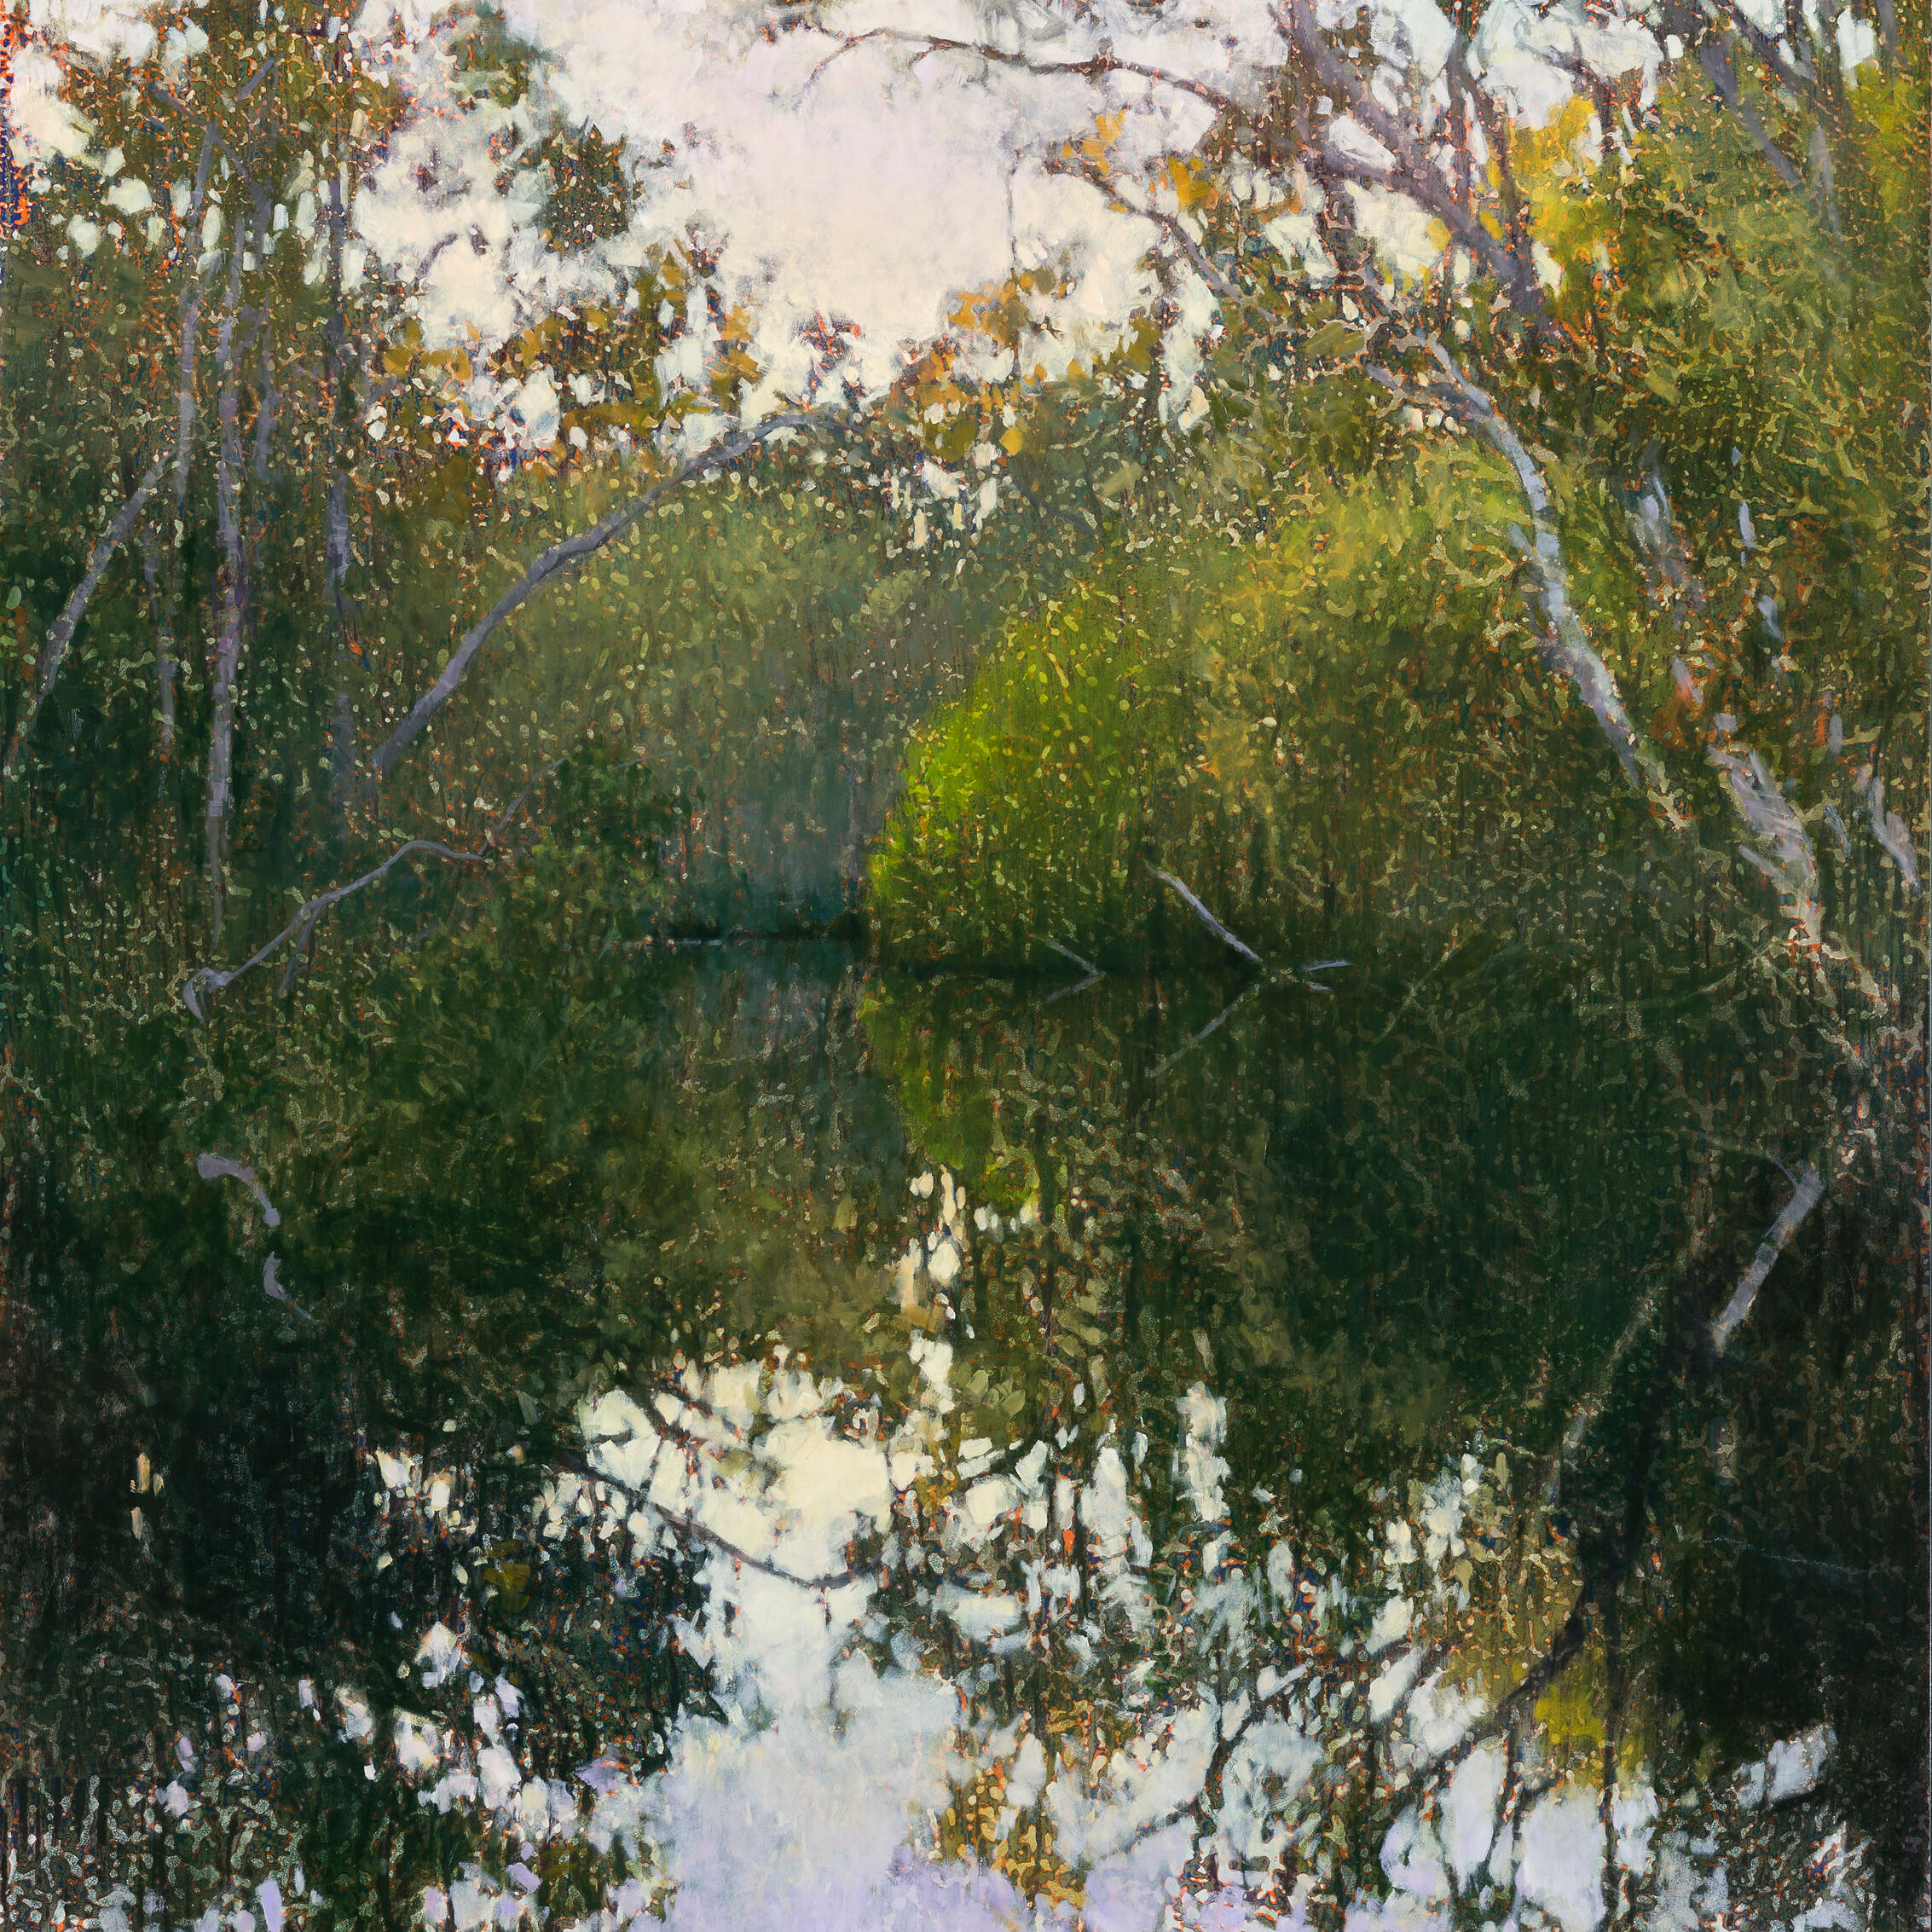 AJ Taylor, Early Morning, Murdering Creek, 2020, oil on board, 91.5 x 82.5 cm